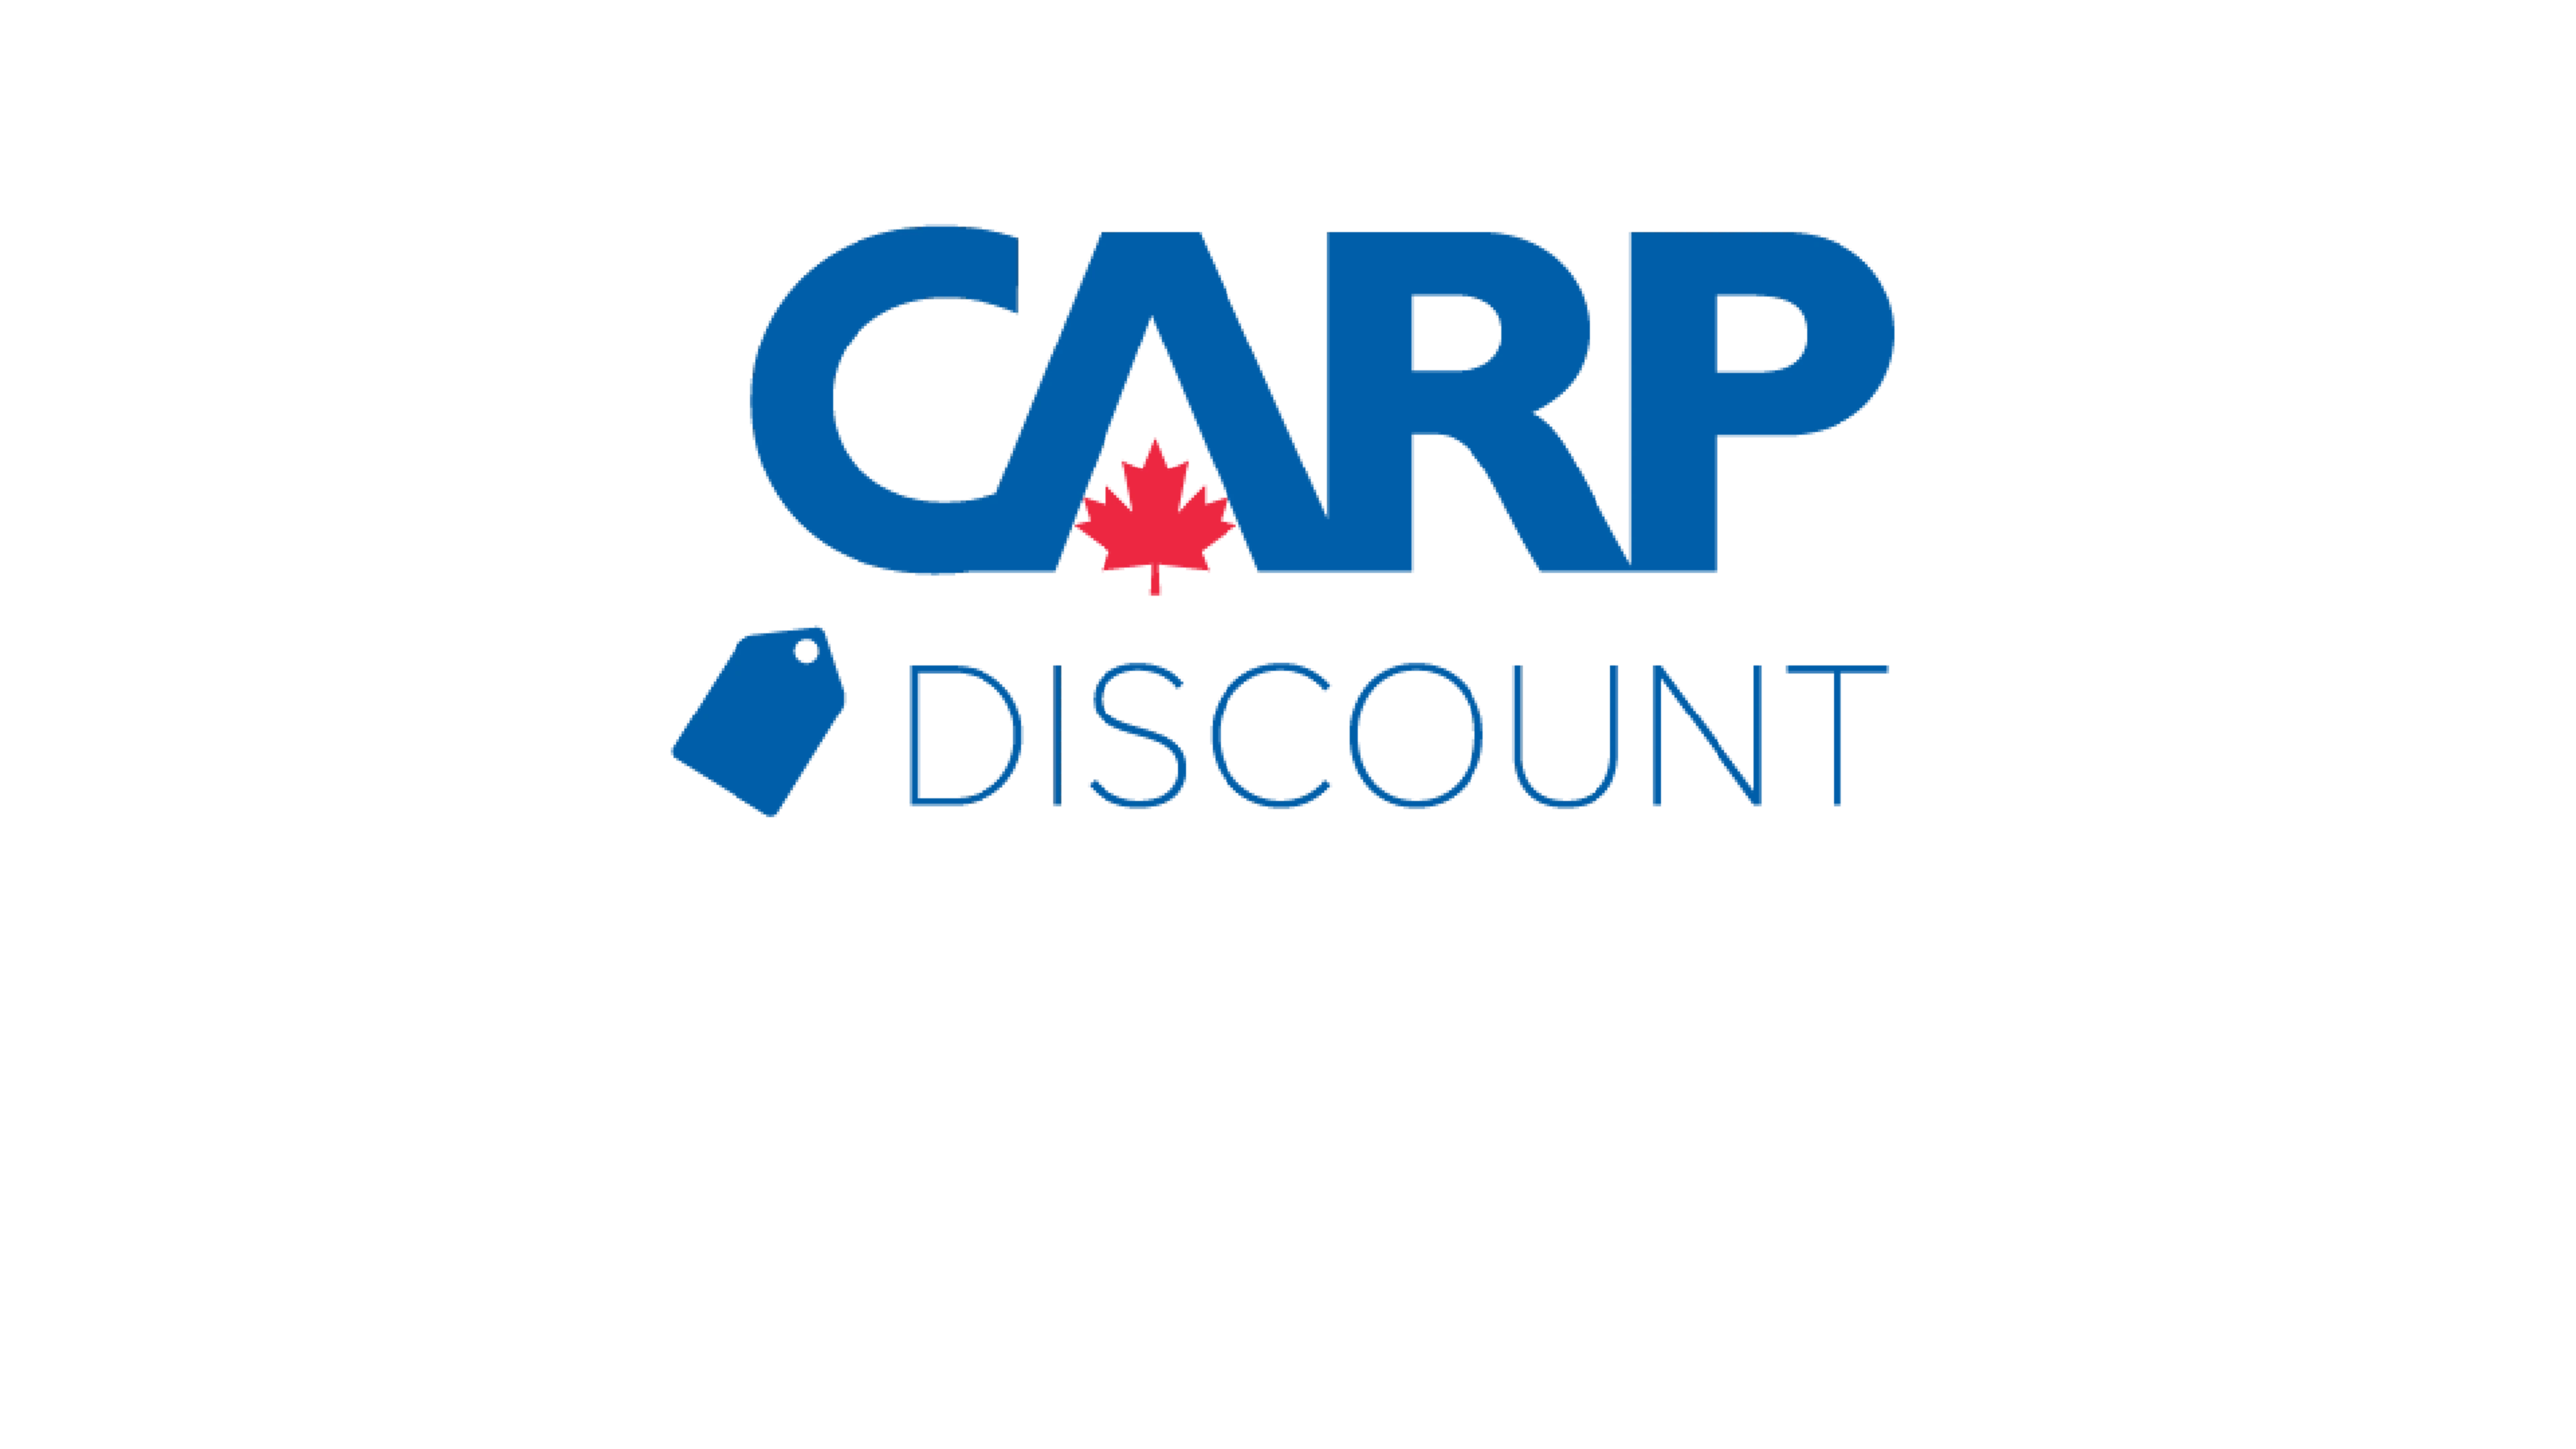 CARP Logo